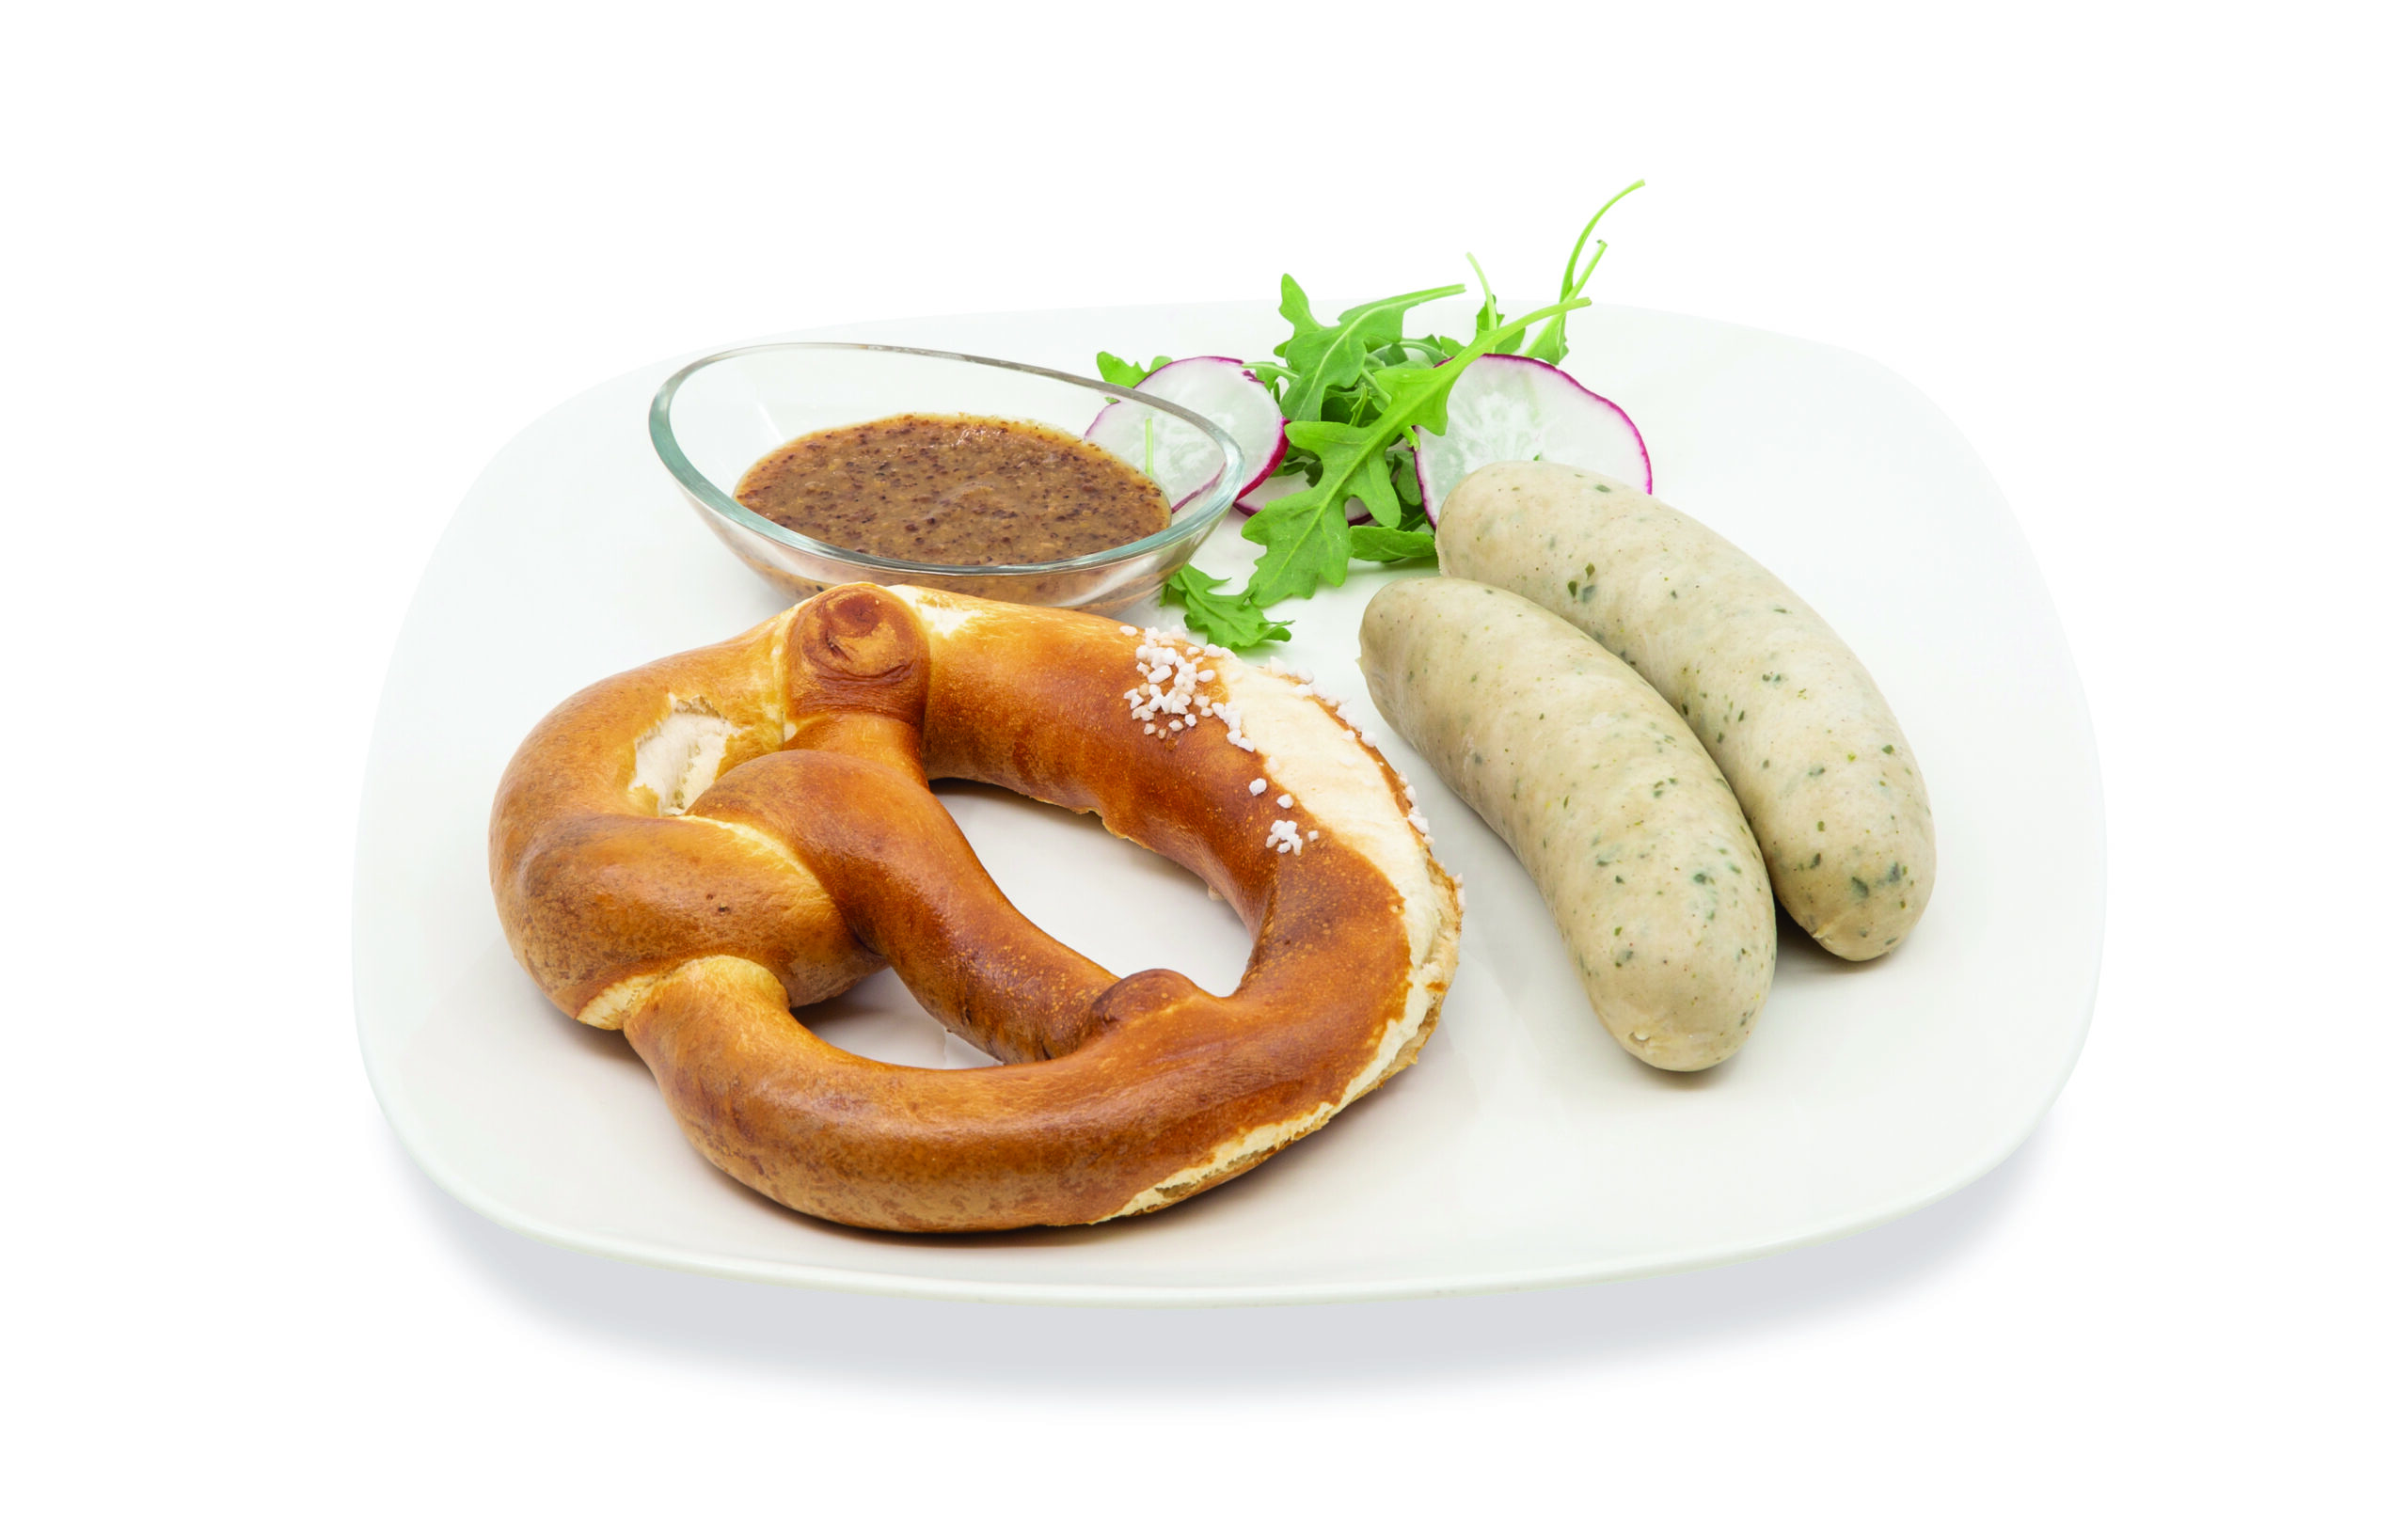 Los desayunos alemanes más típicos con pretzel y otros panecillos